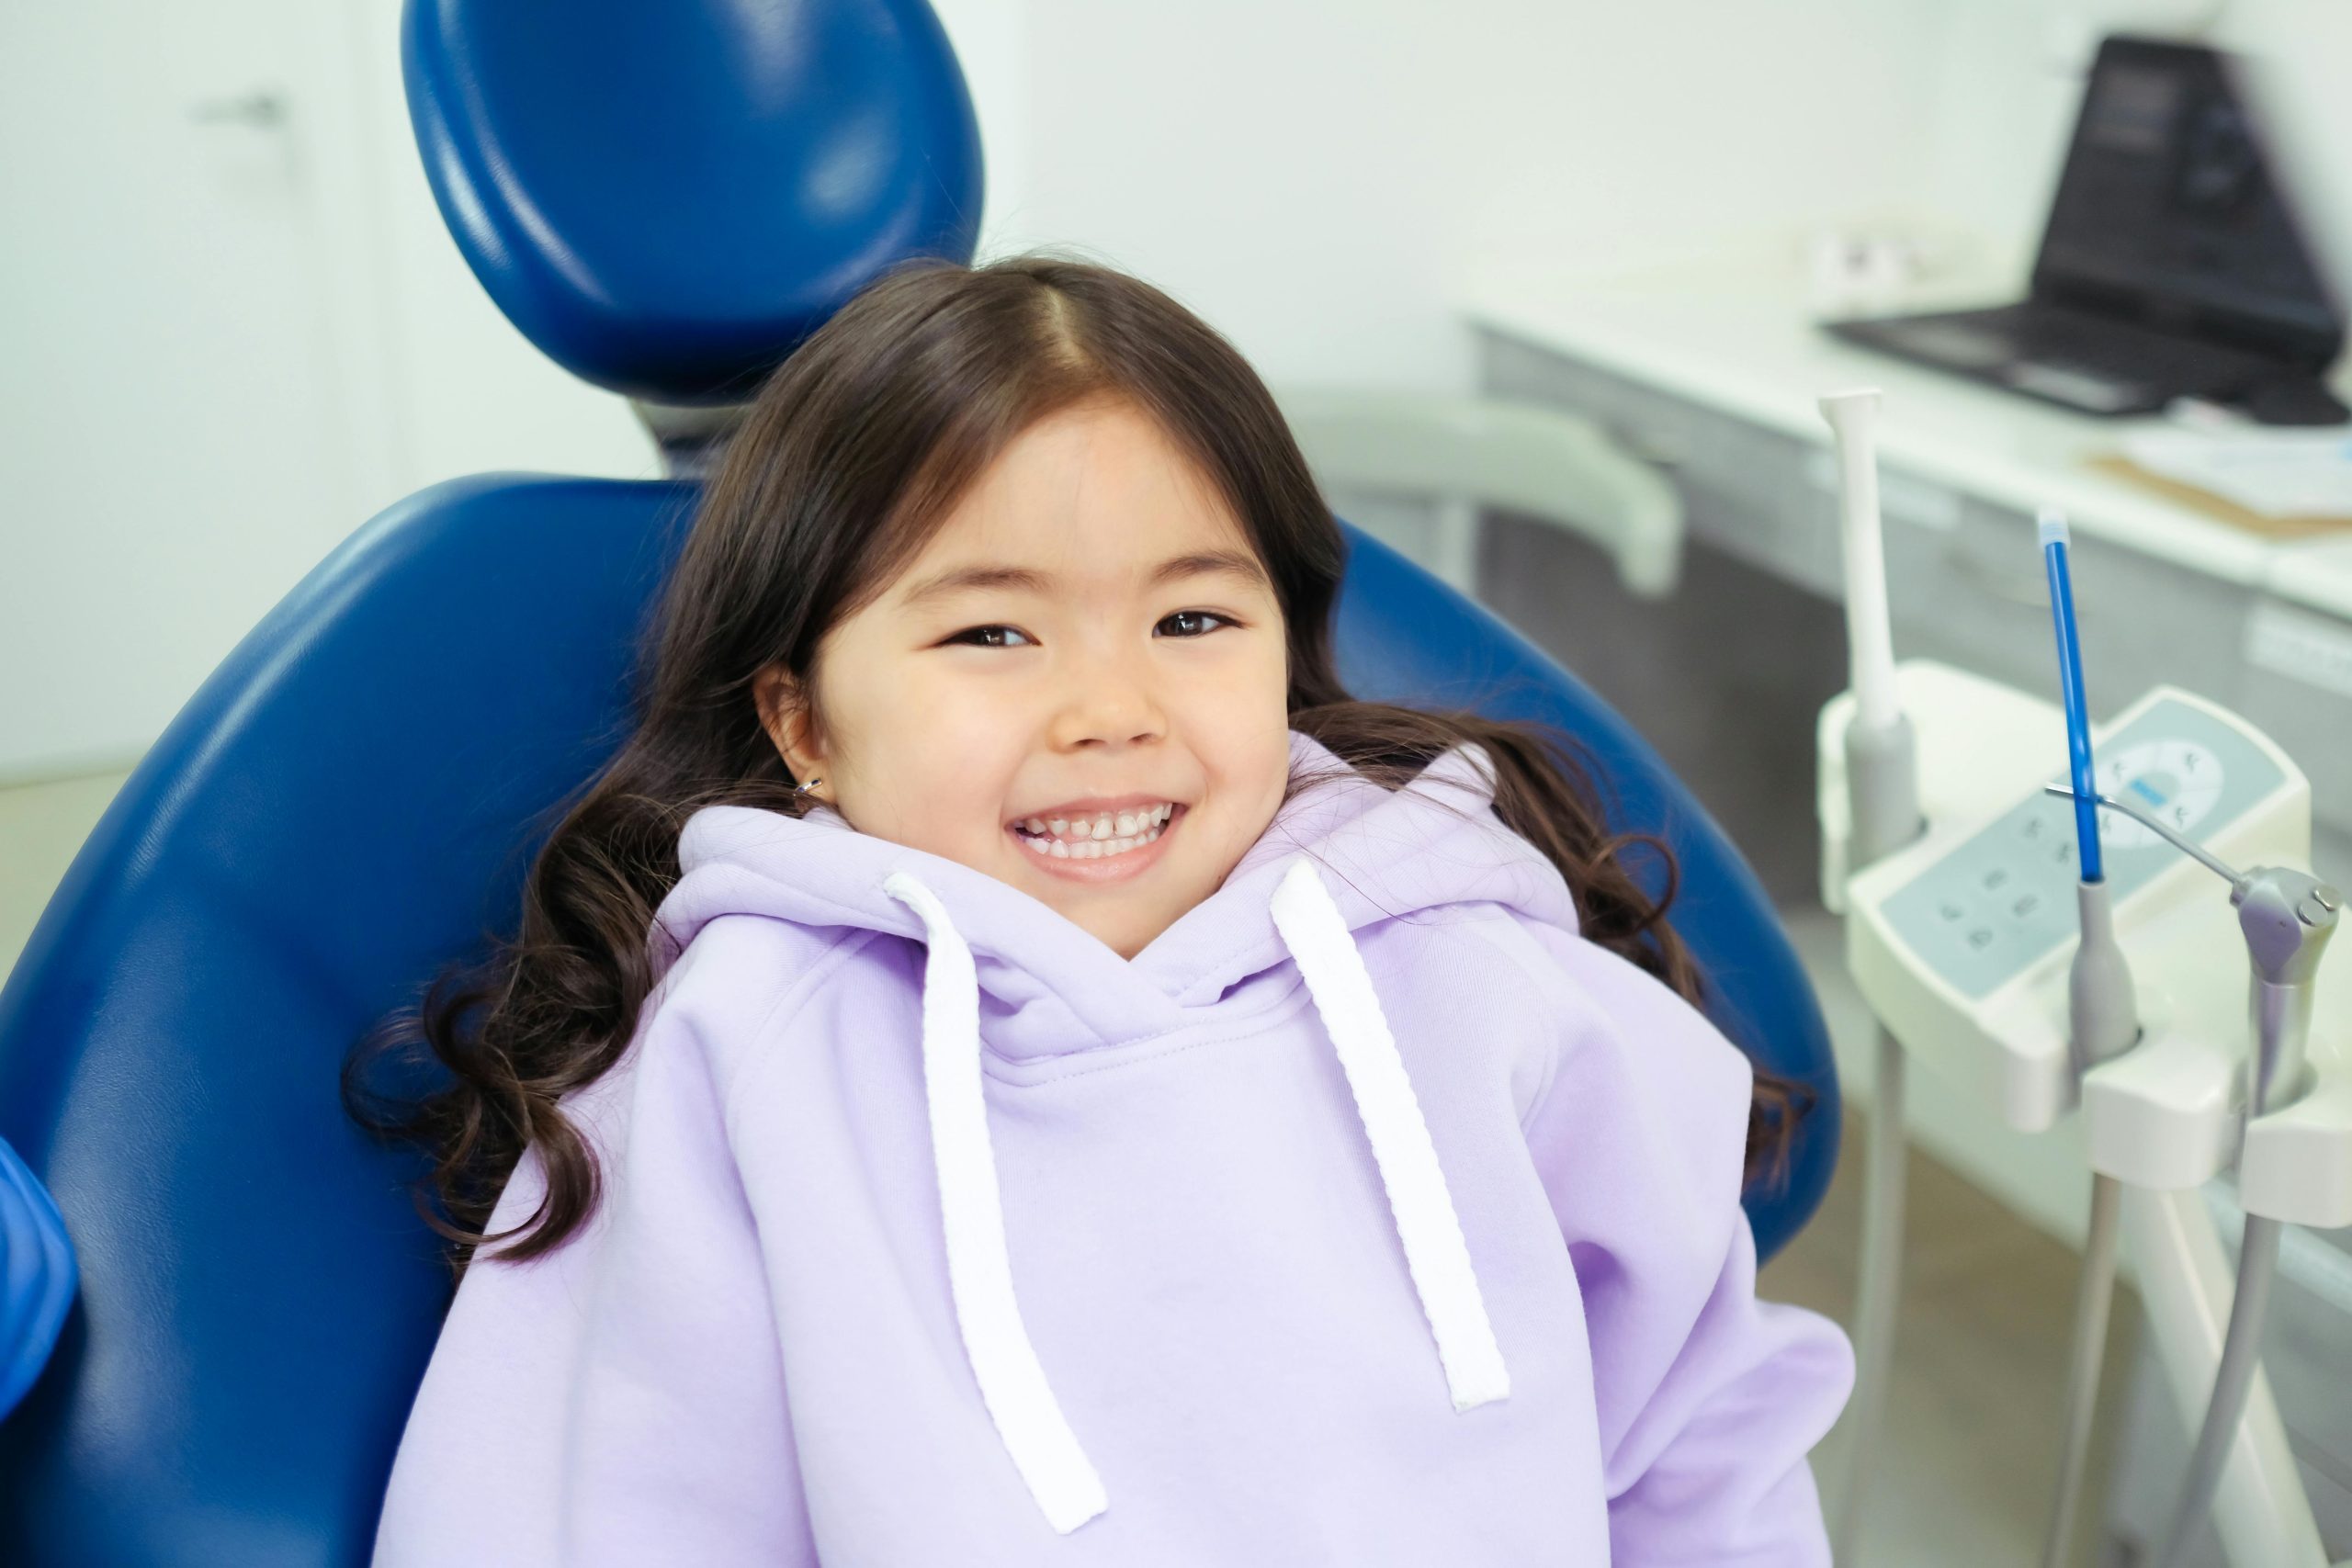 Medicare Dental Benefits for Children